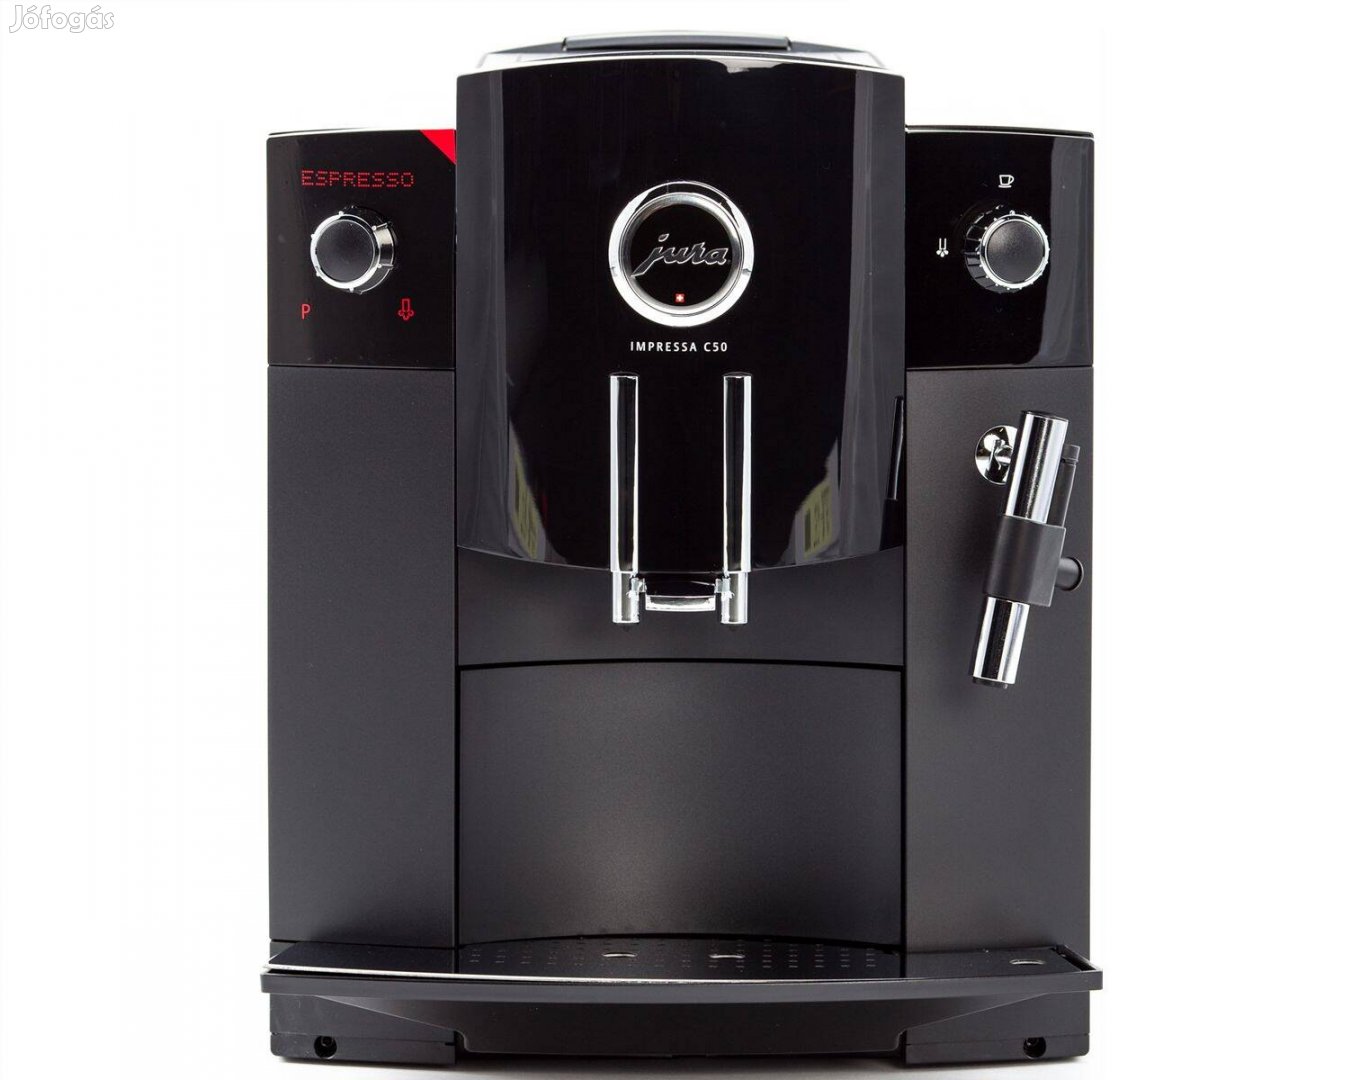 Jura Impressa C50 darálós kávéfőző eladó garanciával